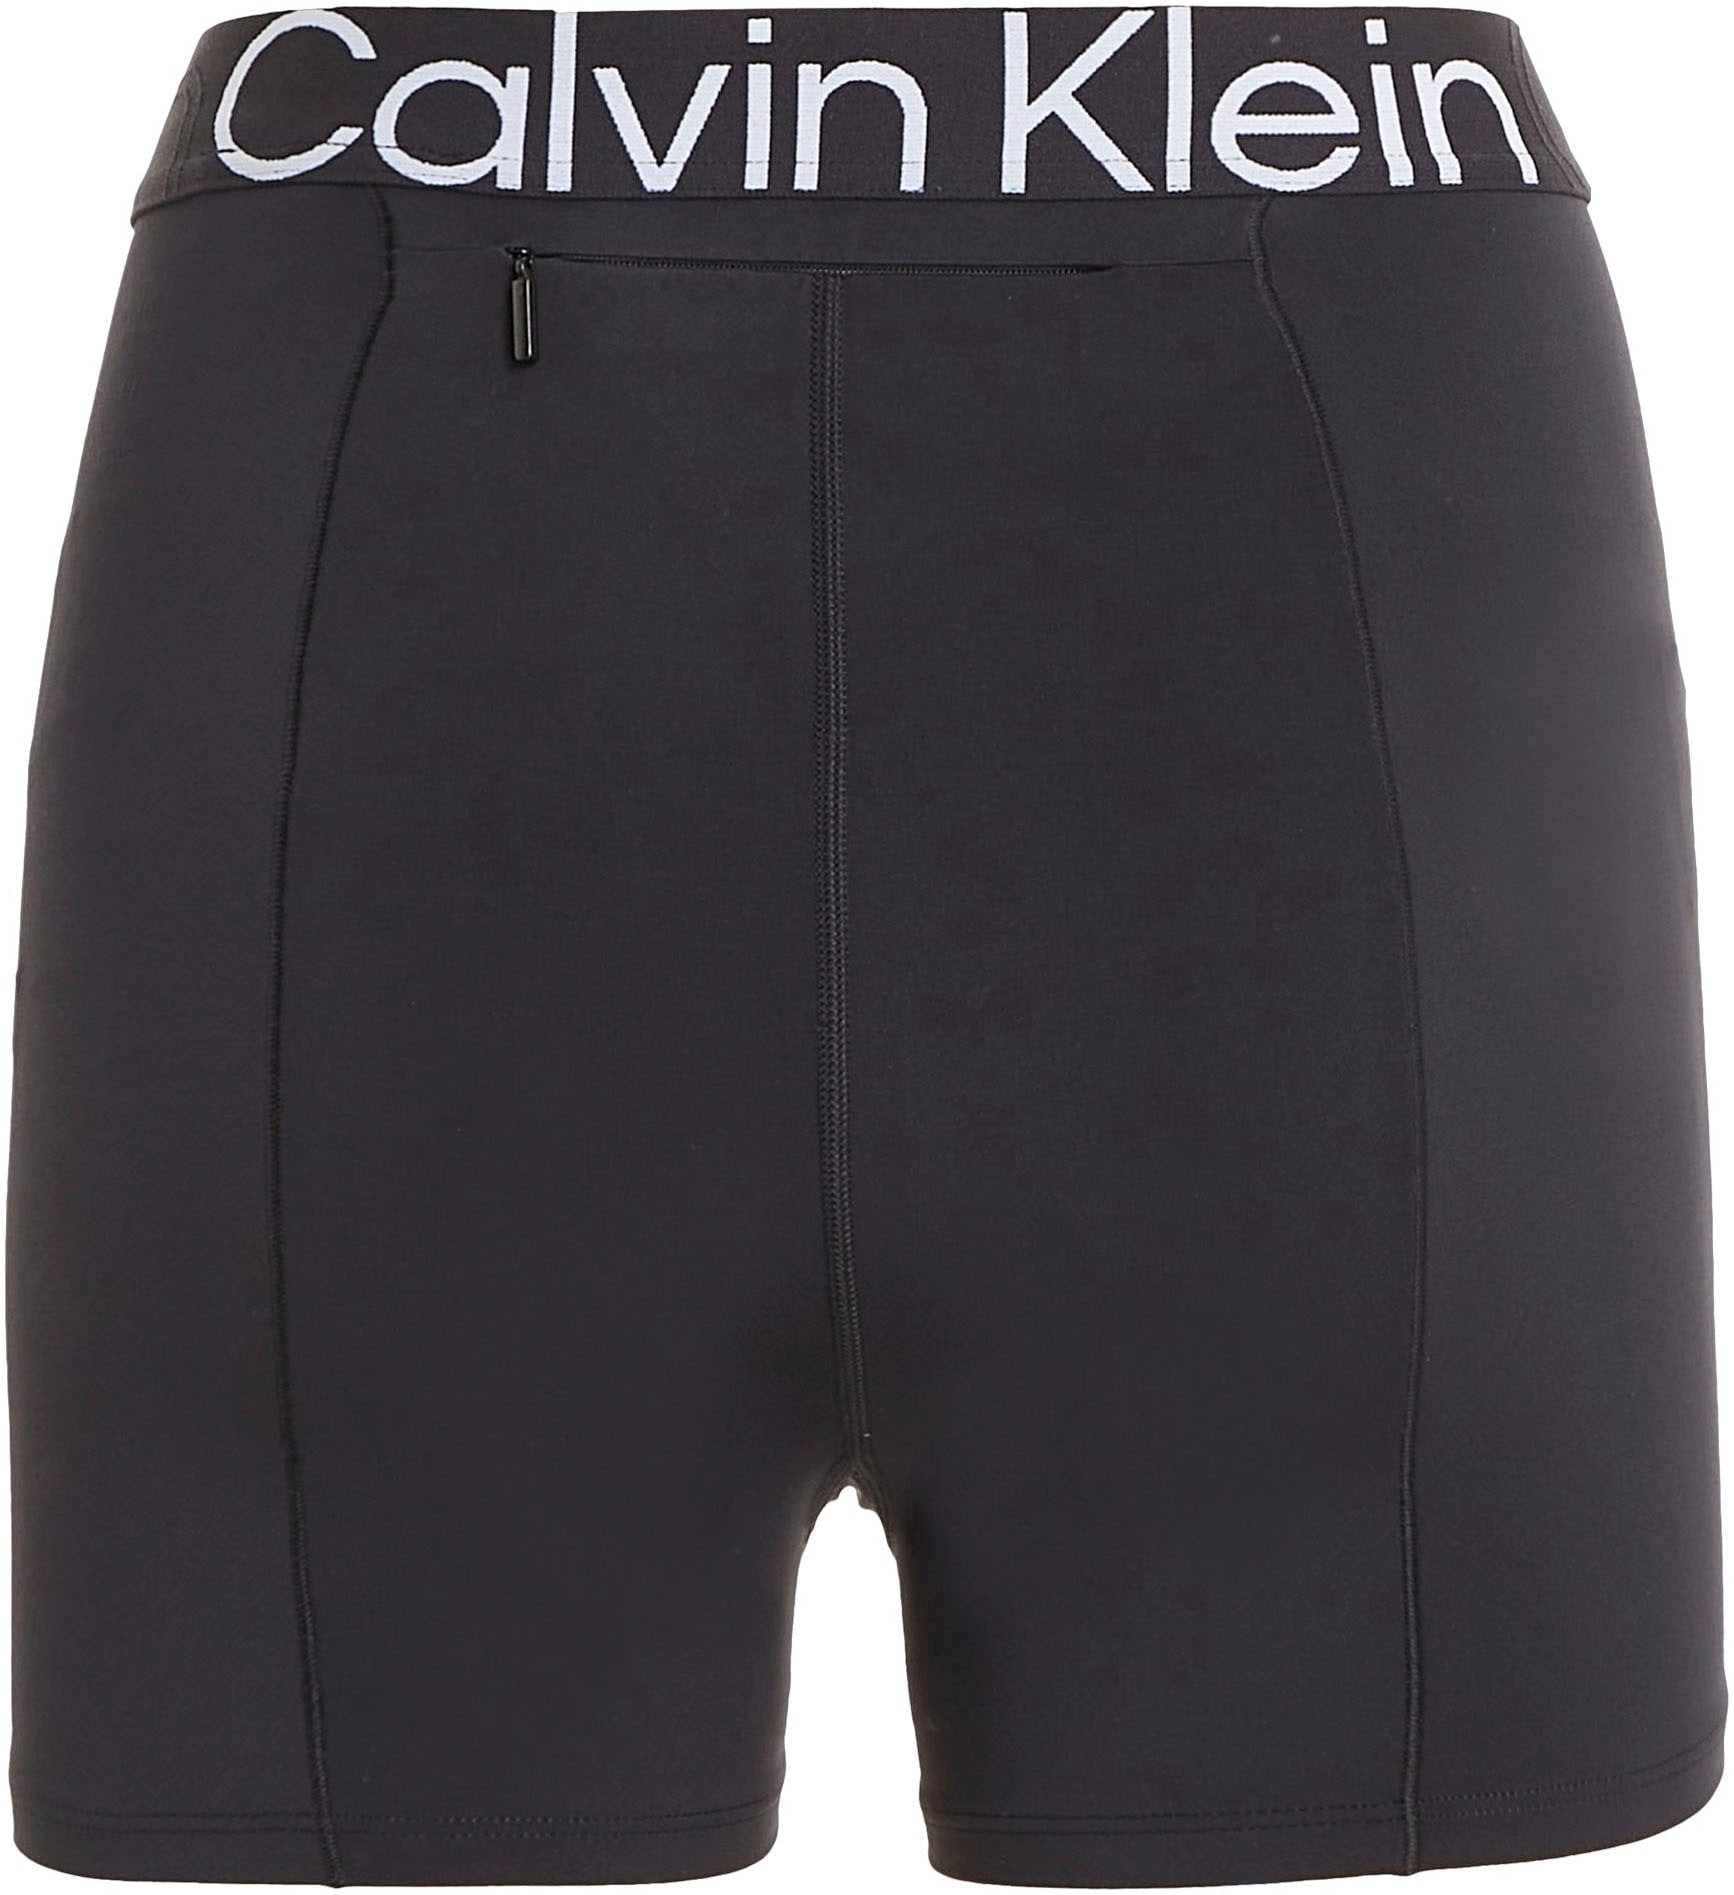 | Radlerhose Sport online BAUR kaufen Calvin Klein